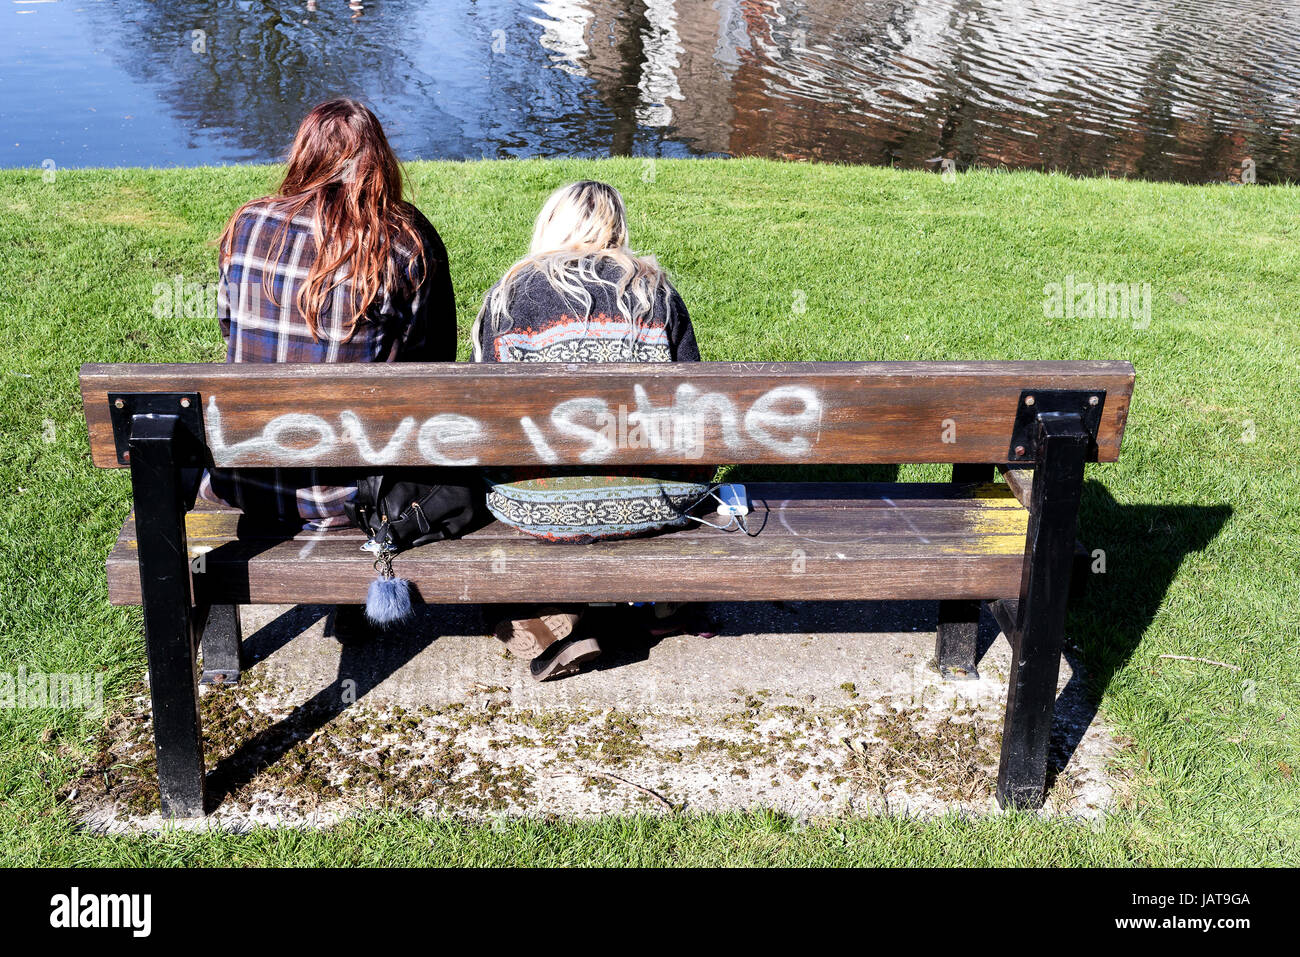 Deux jeunes femme assise à un banc d'amour est l'étiquette sur l'arrière de l'assise en bois Banque D'Images